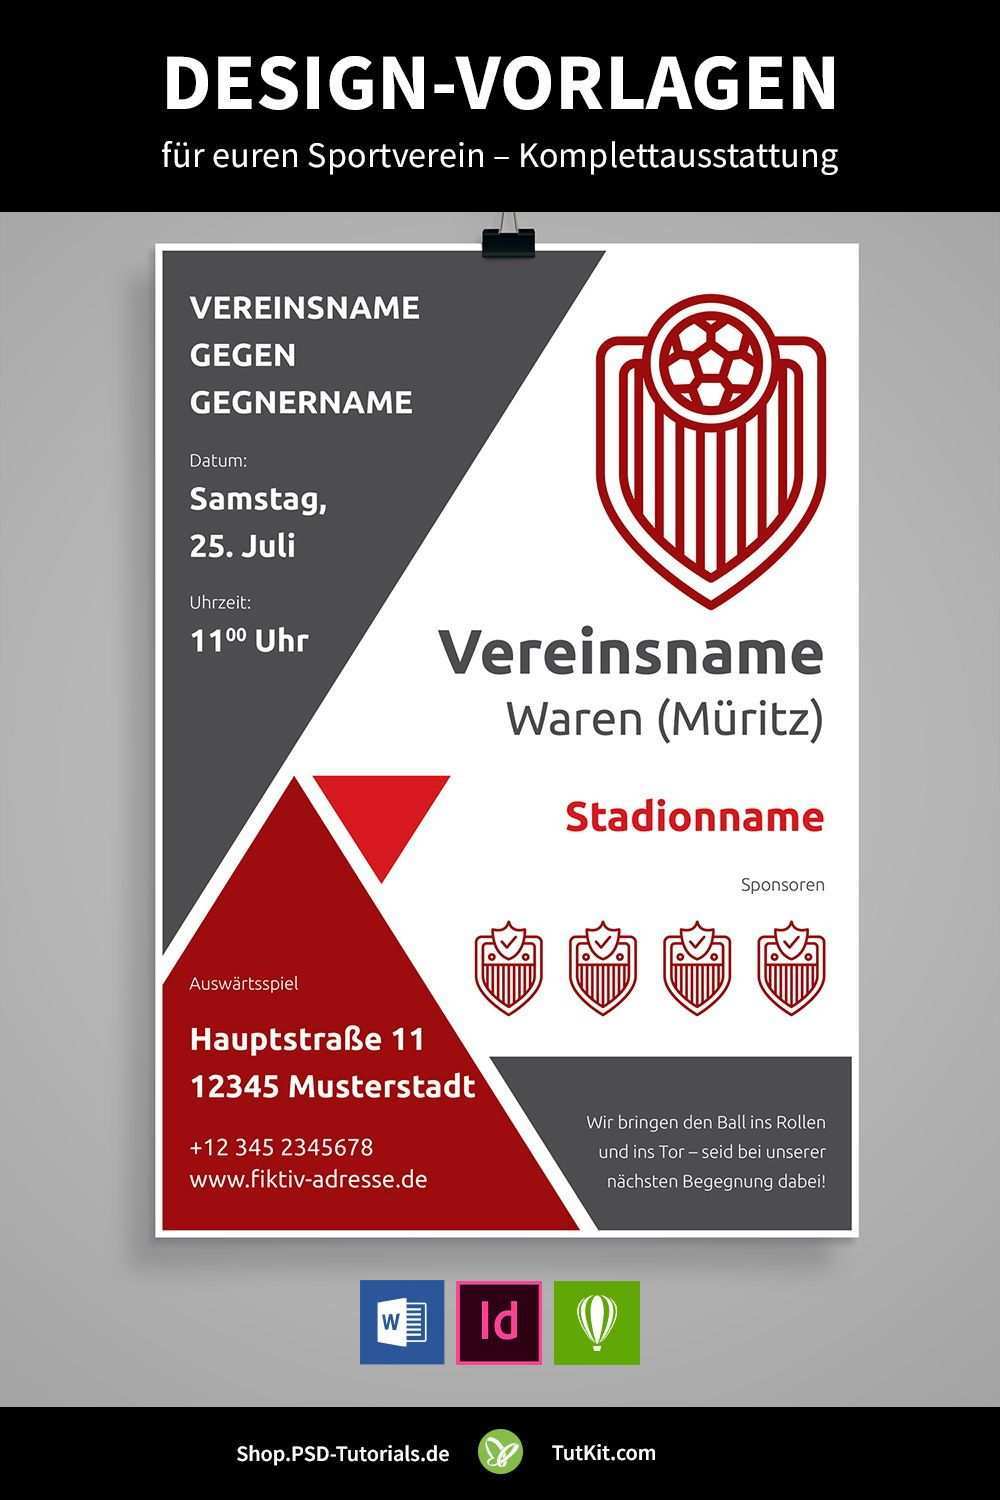 Design Vorlagen Fur Vereine U A Bannerwerbung Spendenscheck Banner Werbung Verein Sportverein